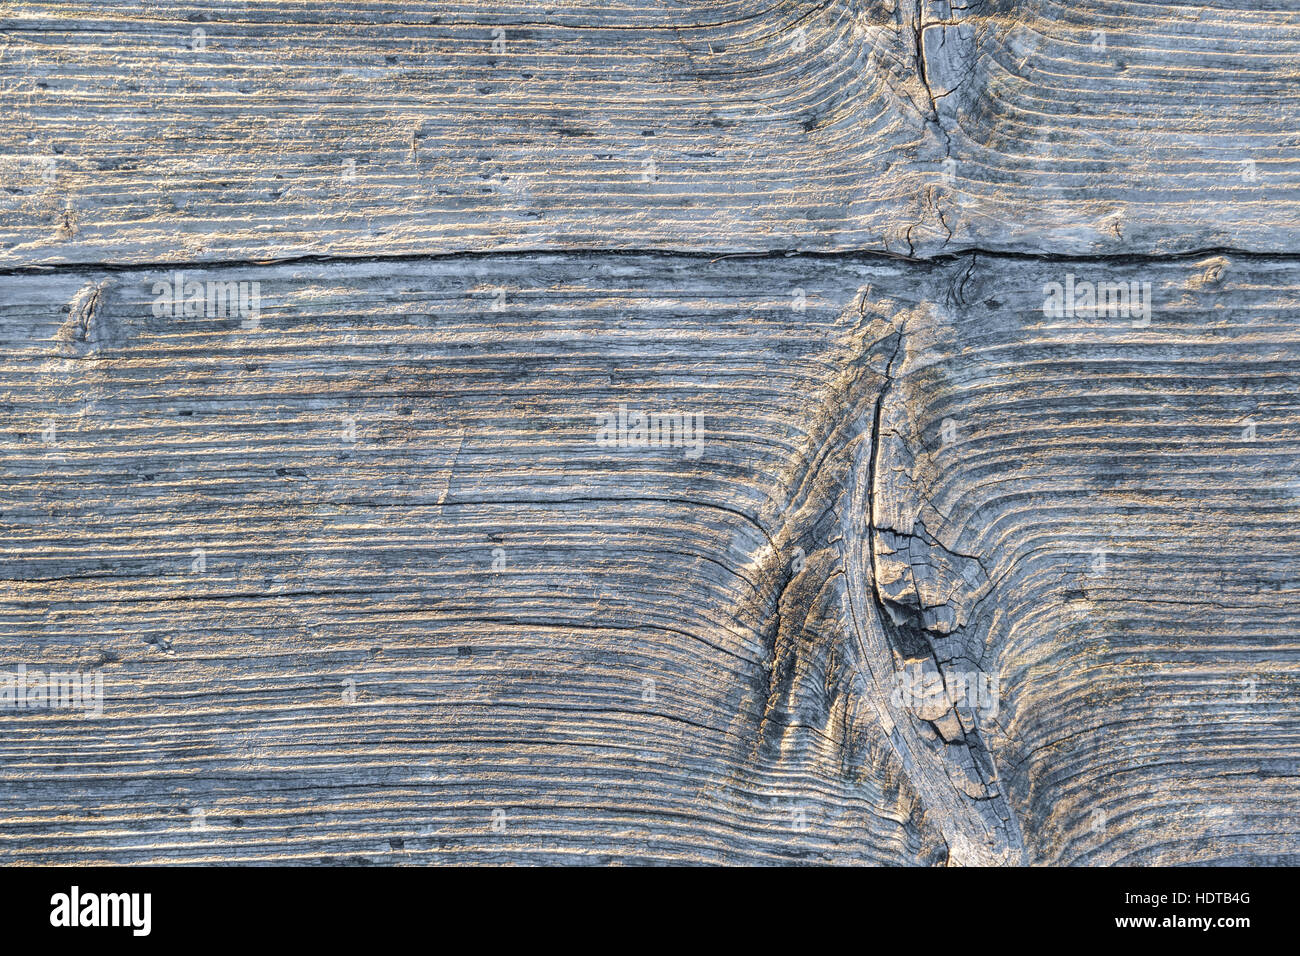 Weathered Wood surface avec des couches horizontales et une planète design sur le côté gauche. Banque D'Images